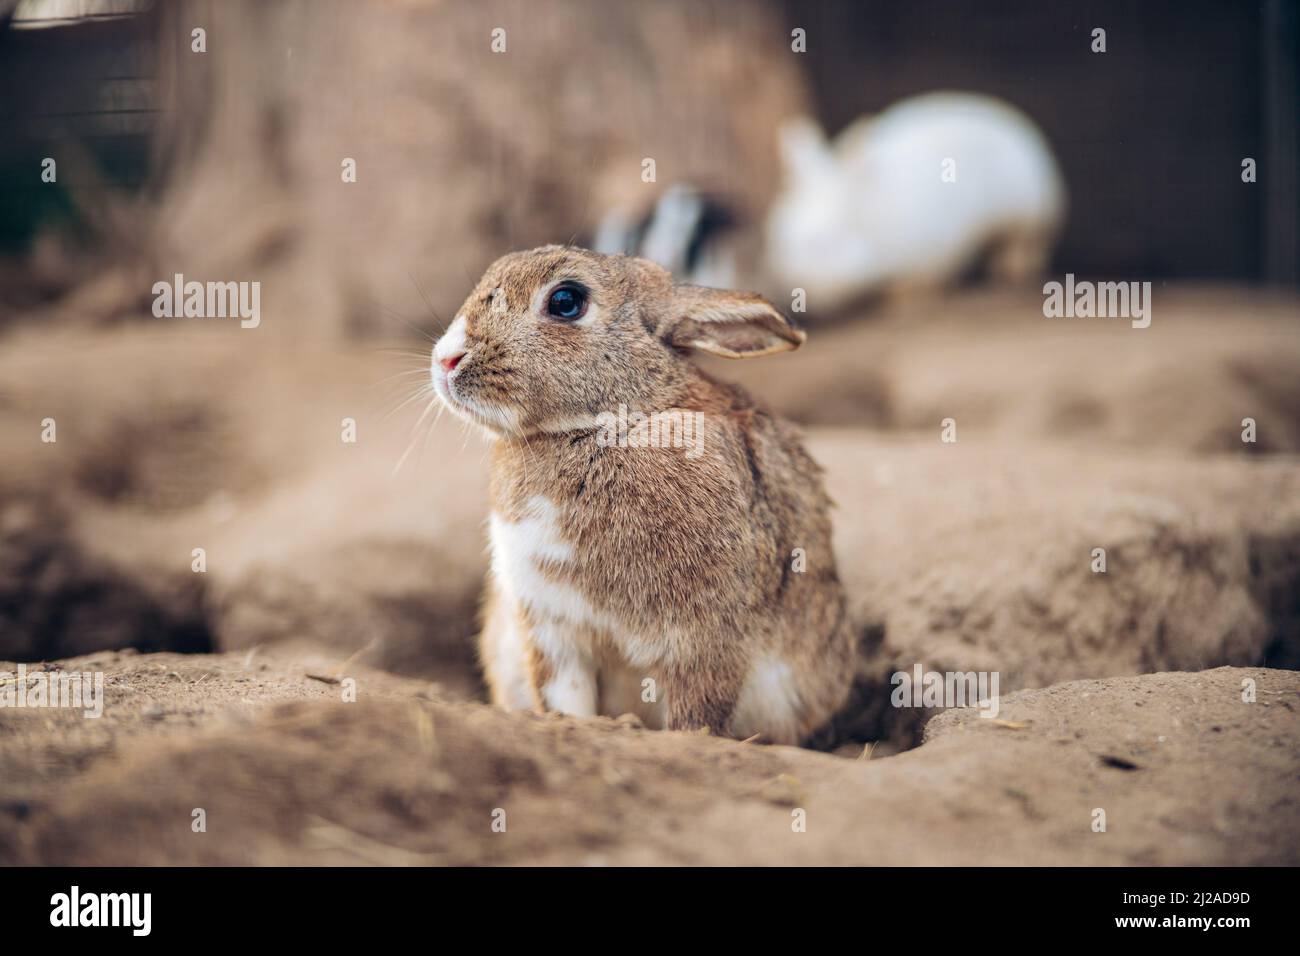 Entzückendes braunes Kaninchen steht auf dem Boden. Teenager Brown Bunny sitzt zwischen Löchern im Boden. Hochwertige Fotos Stockfoto